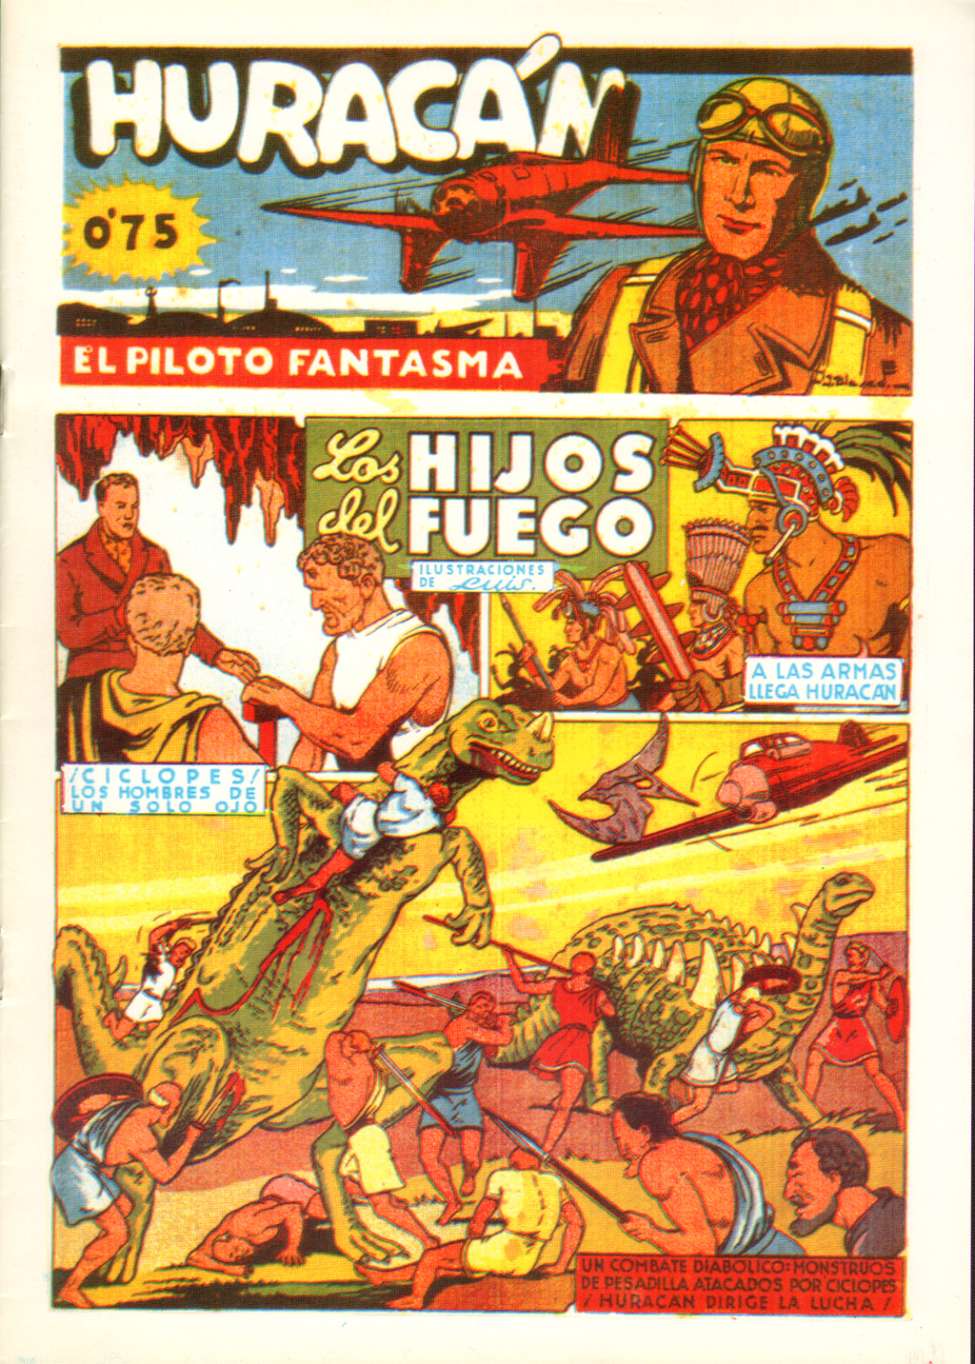 Comic Book Cover For Huracan El Piloto Fantasma 9 - Los Hijos del Fuego